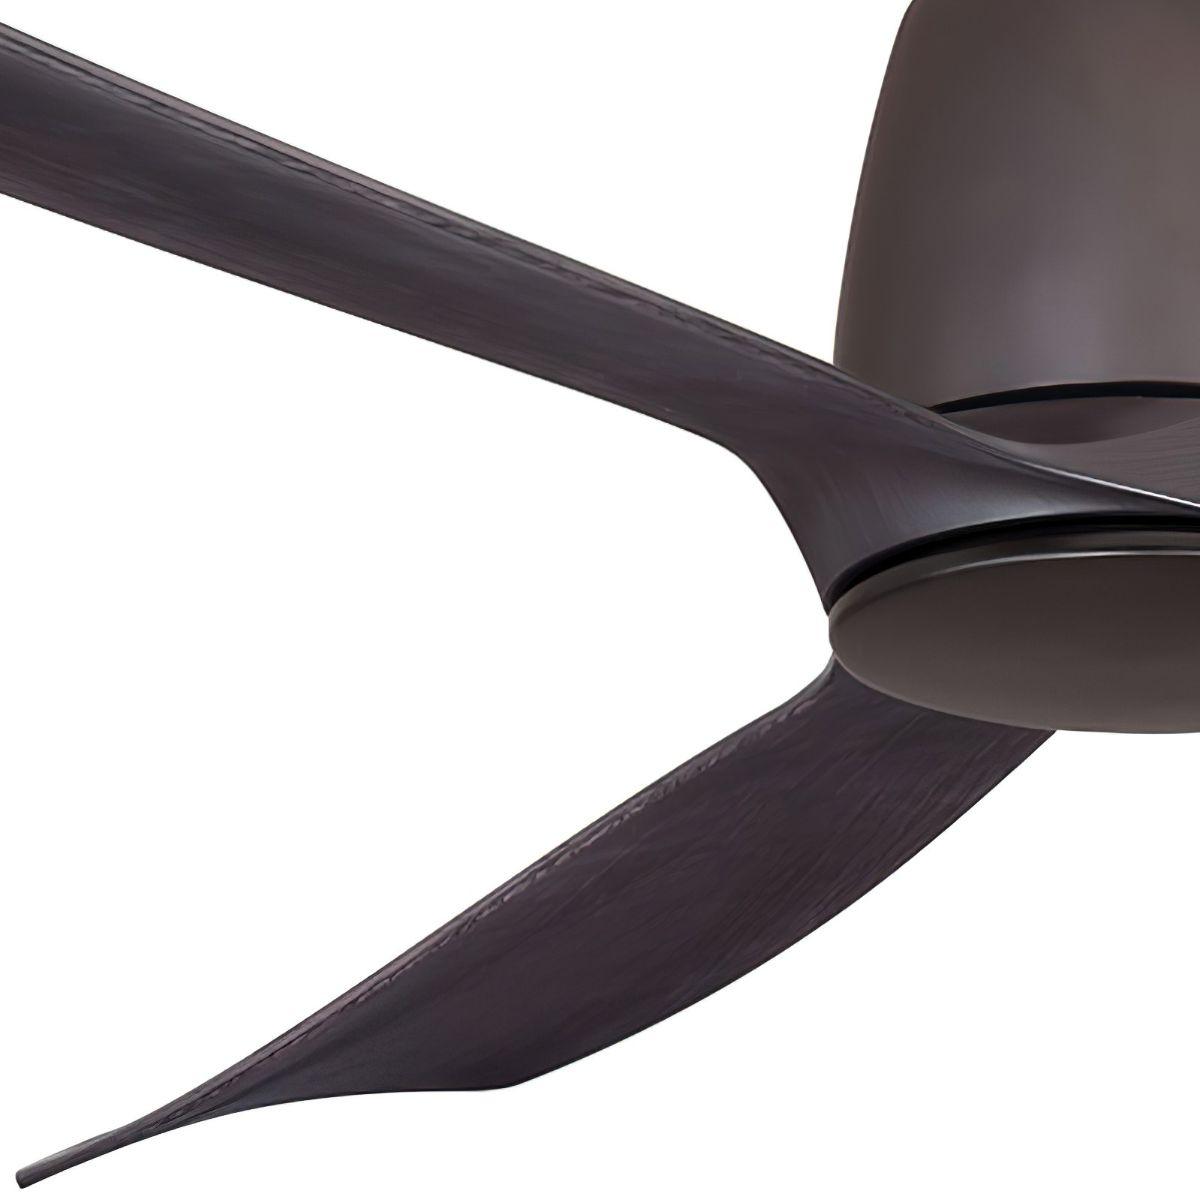 Kute 52 Inch Propeller Indoor/Outdoor Ceiling Fan With Remote, DC Motor